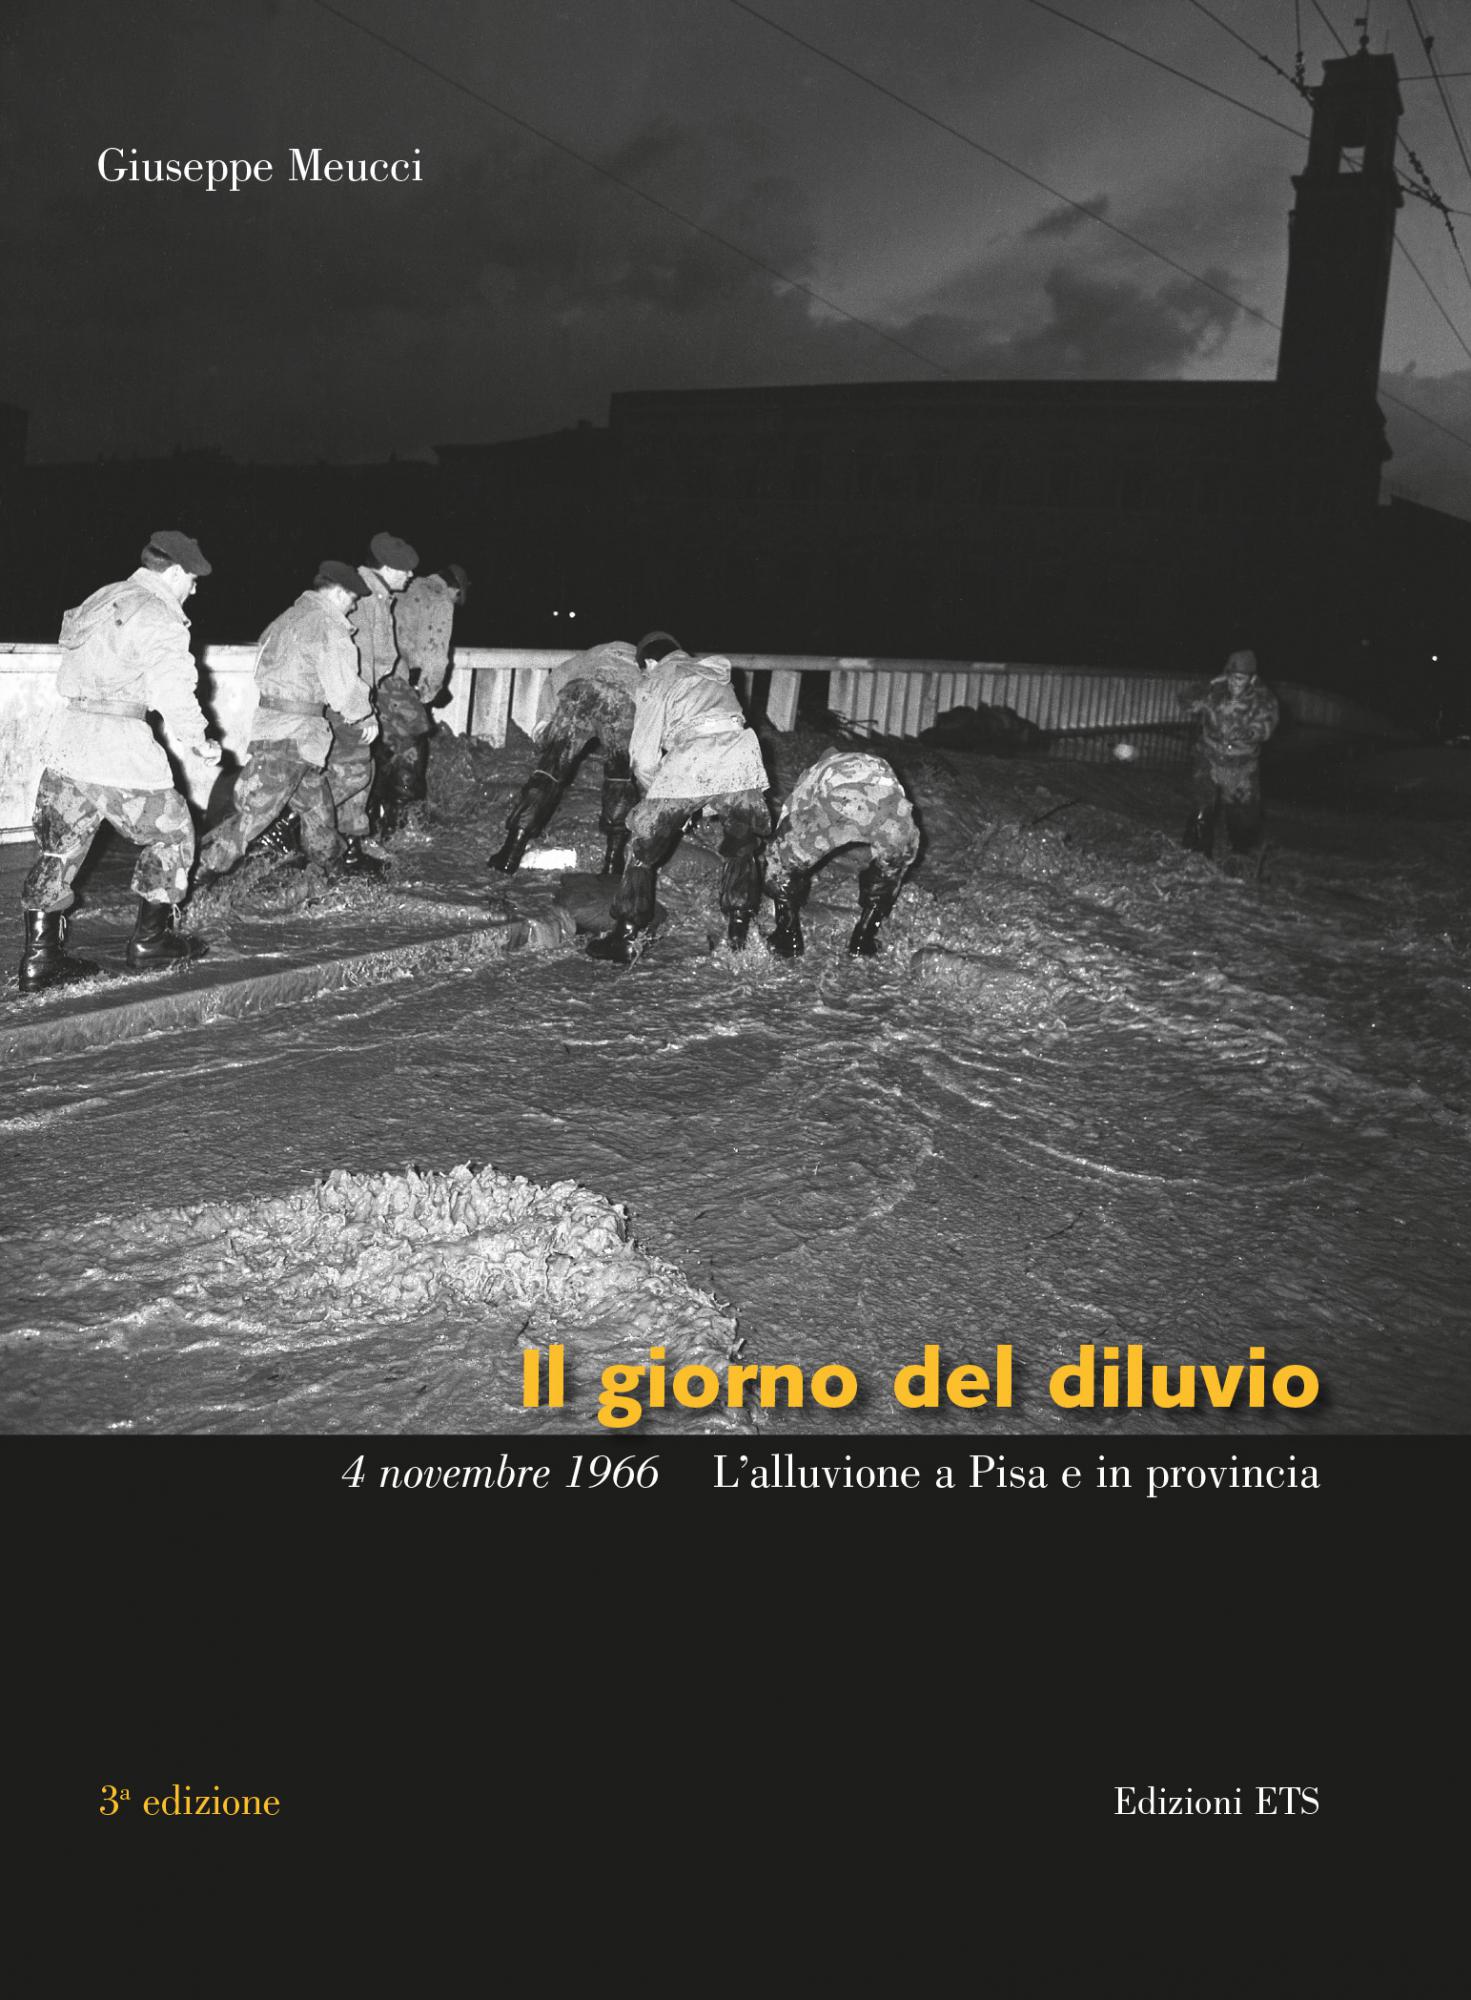 Il giorno del diluvio <br /> 4 novembre 1966 <br />L'alluvione a Pisa e in provincia.Terza edizione